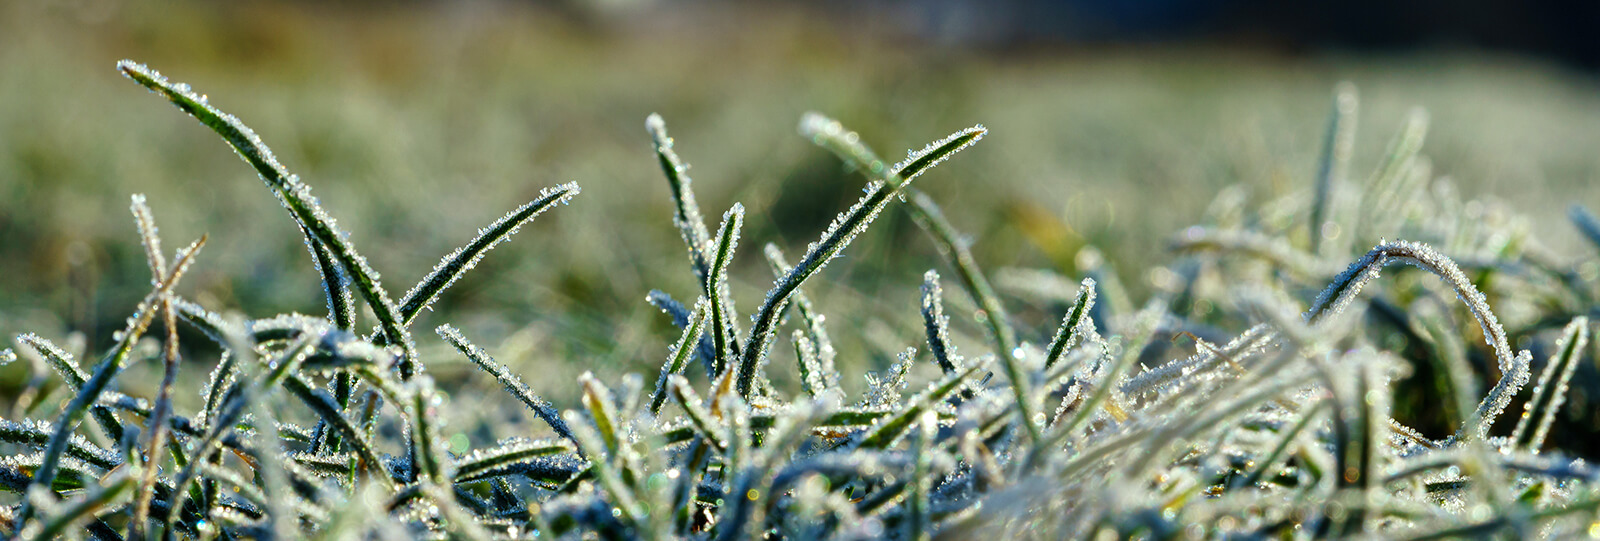 pfas-pre-winter-lawn-care-frost-grass